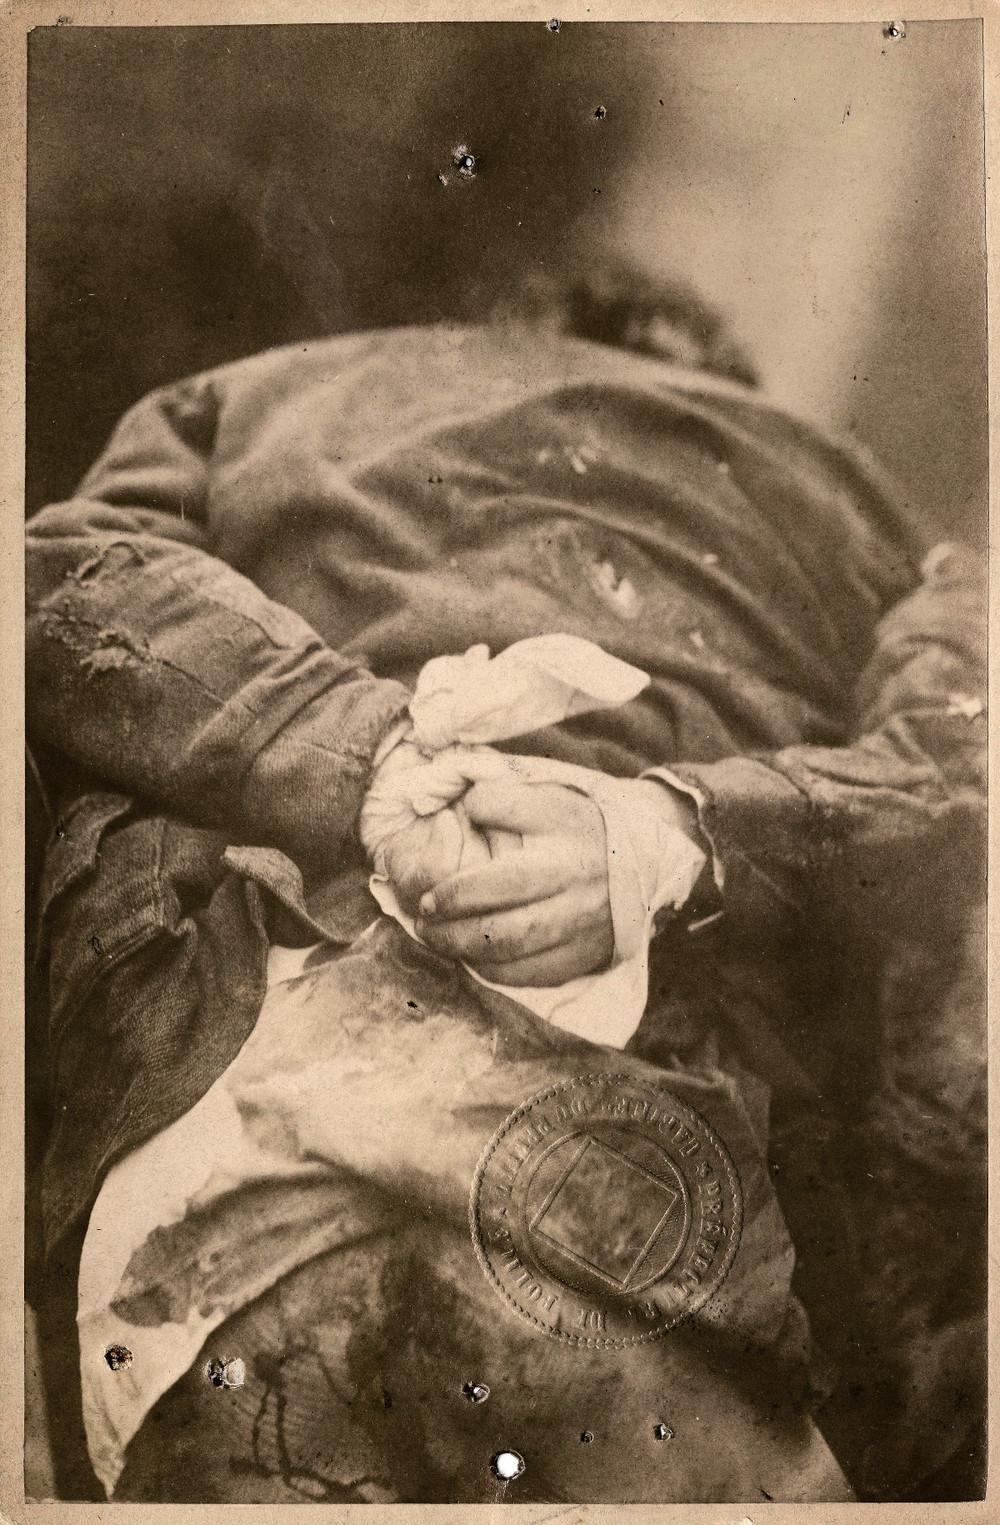 Ο 6χρονος Ζουλς Σένεν βρέθηκε νεκρός στις 25 Φεβρουαρίου του 1881. Δολοφόνος ήταν ένας 16χρονος. Το θύμα βρέθηκε με δεμένα τα χέρια, το παλτό του τρύπιο και το πουκάμισό λερωμένο με αίμα. Ήταν η πρώτη υπόθεση που χρησιμοποιήθηκε η φωτογραφία.